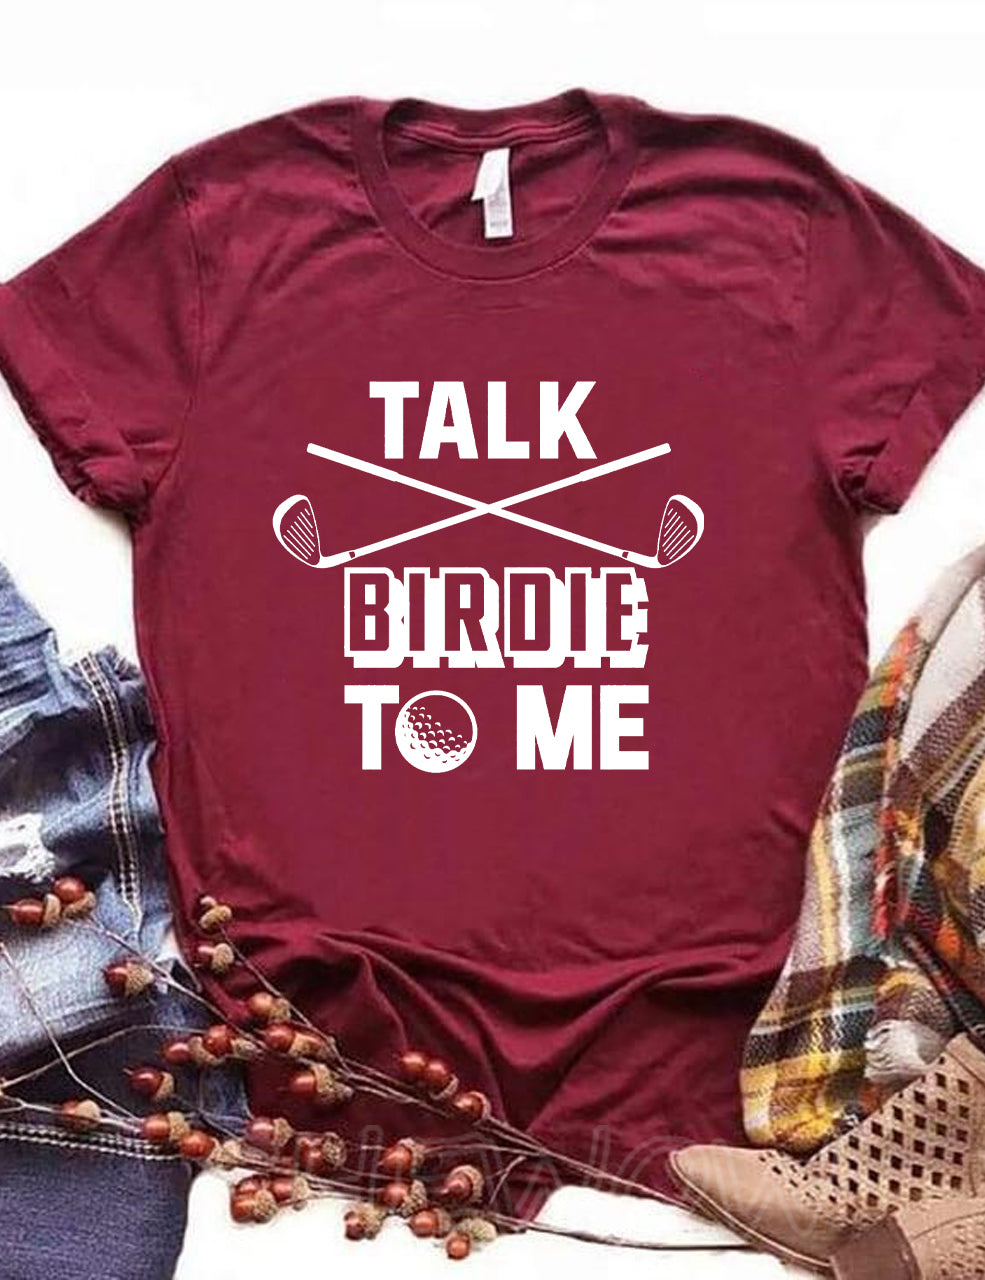 Talk Birdie To Me Golf T-shirt